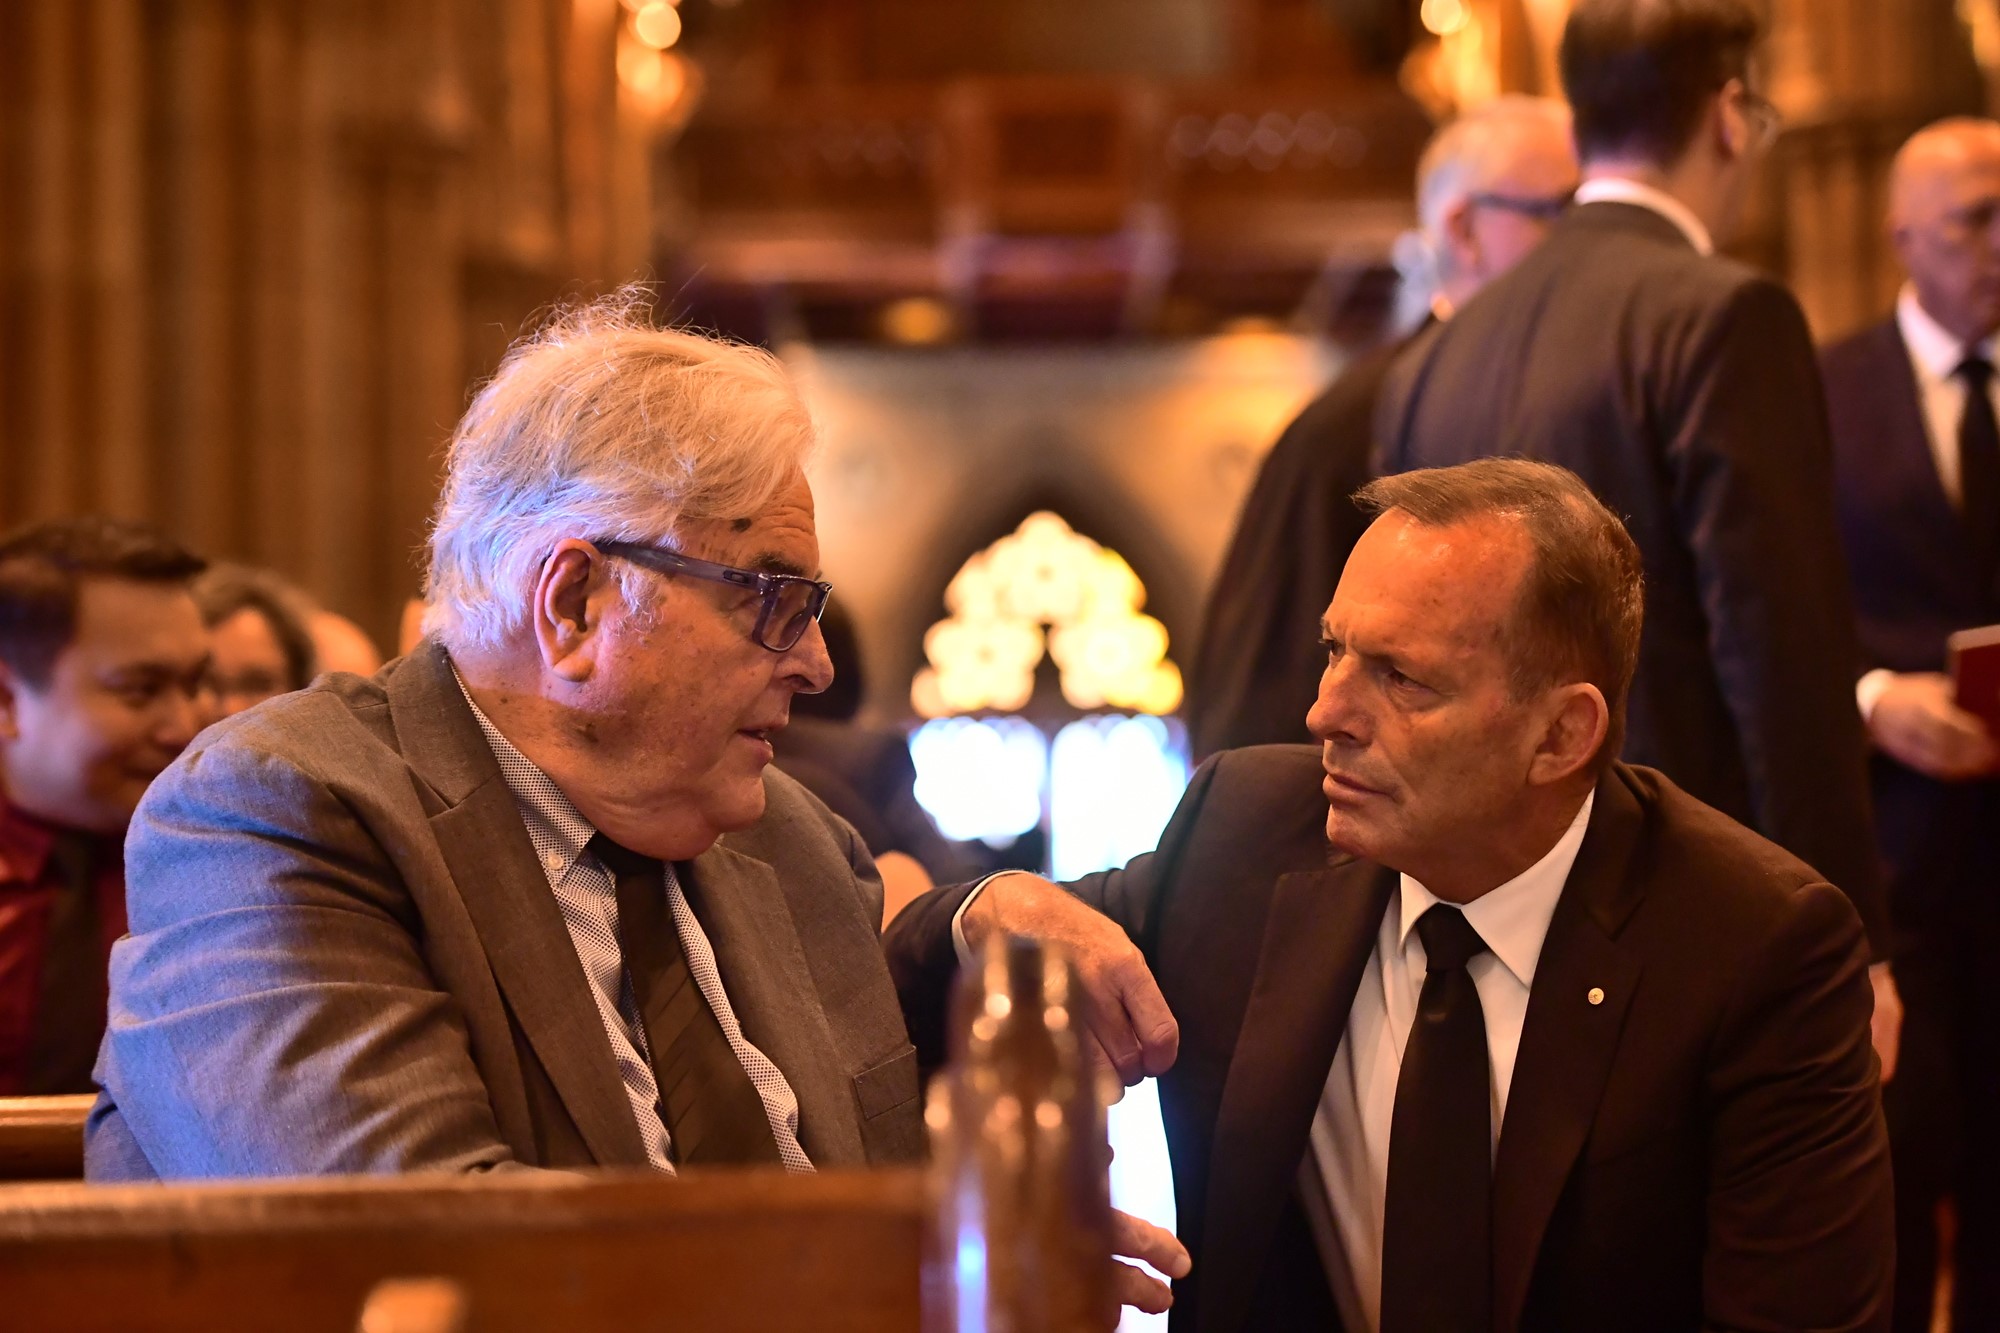 David Pell sits on a pew talking to Tony Abbott.